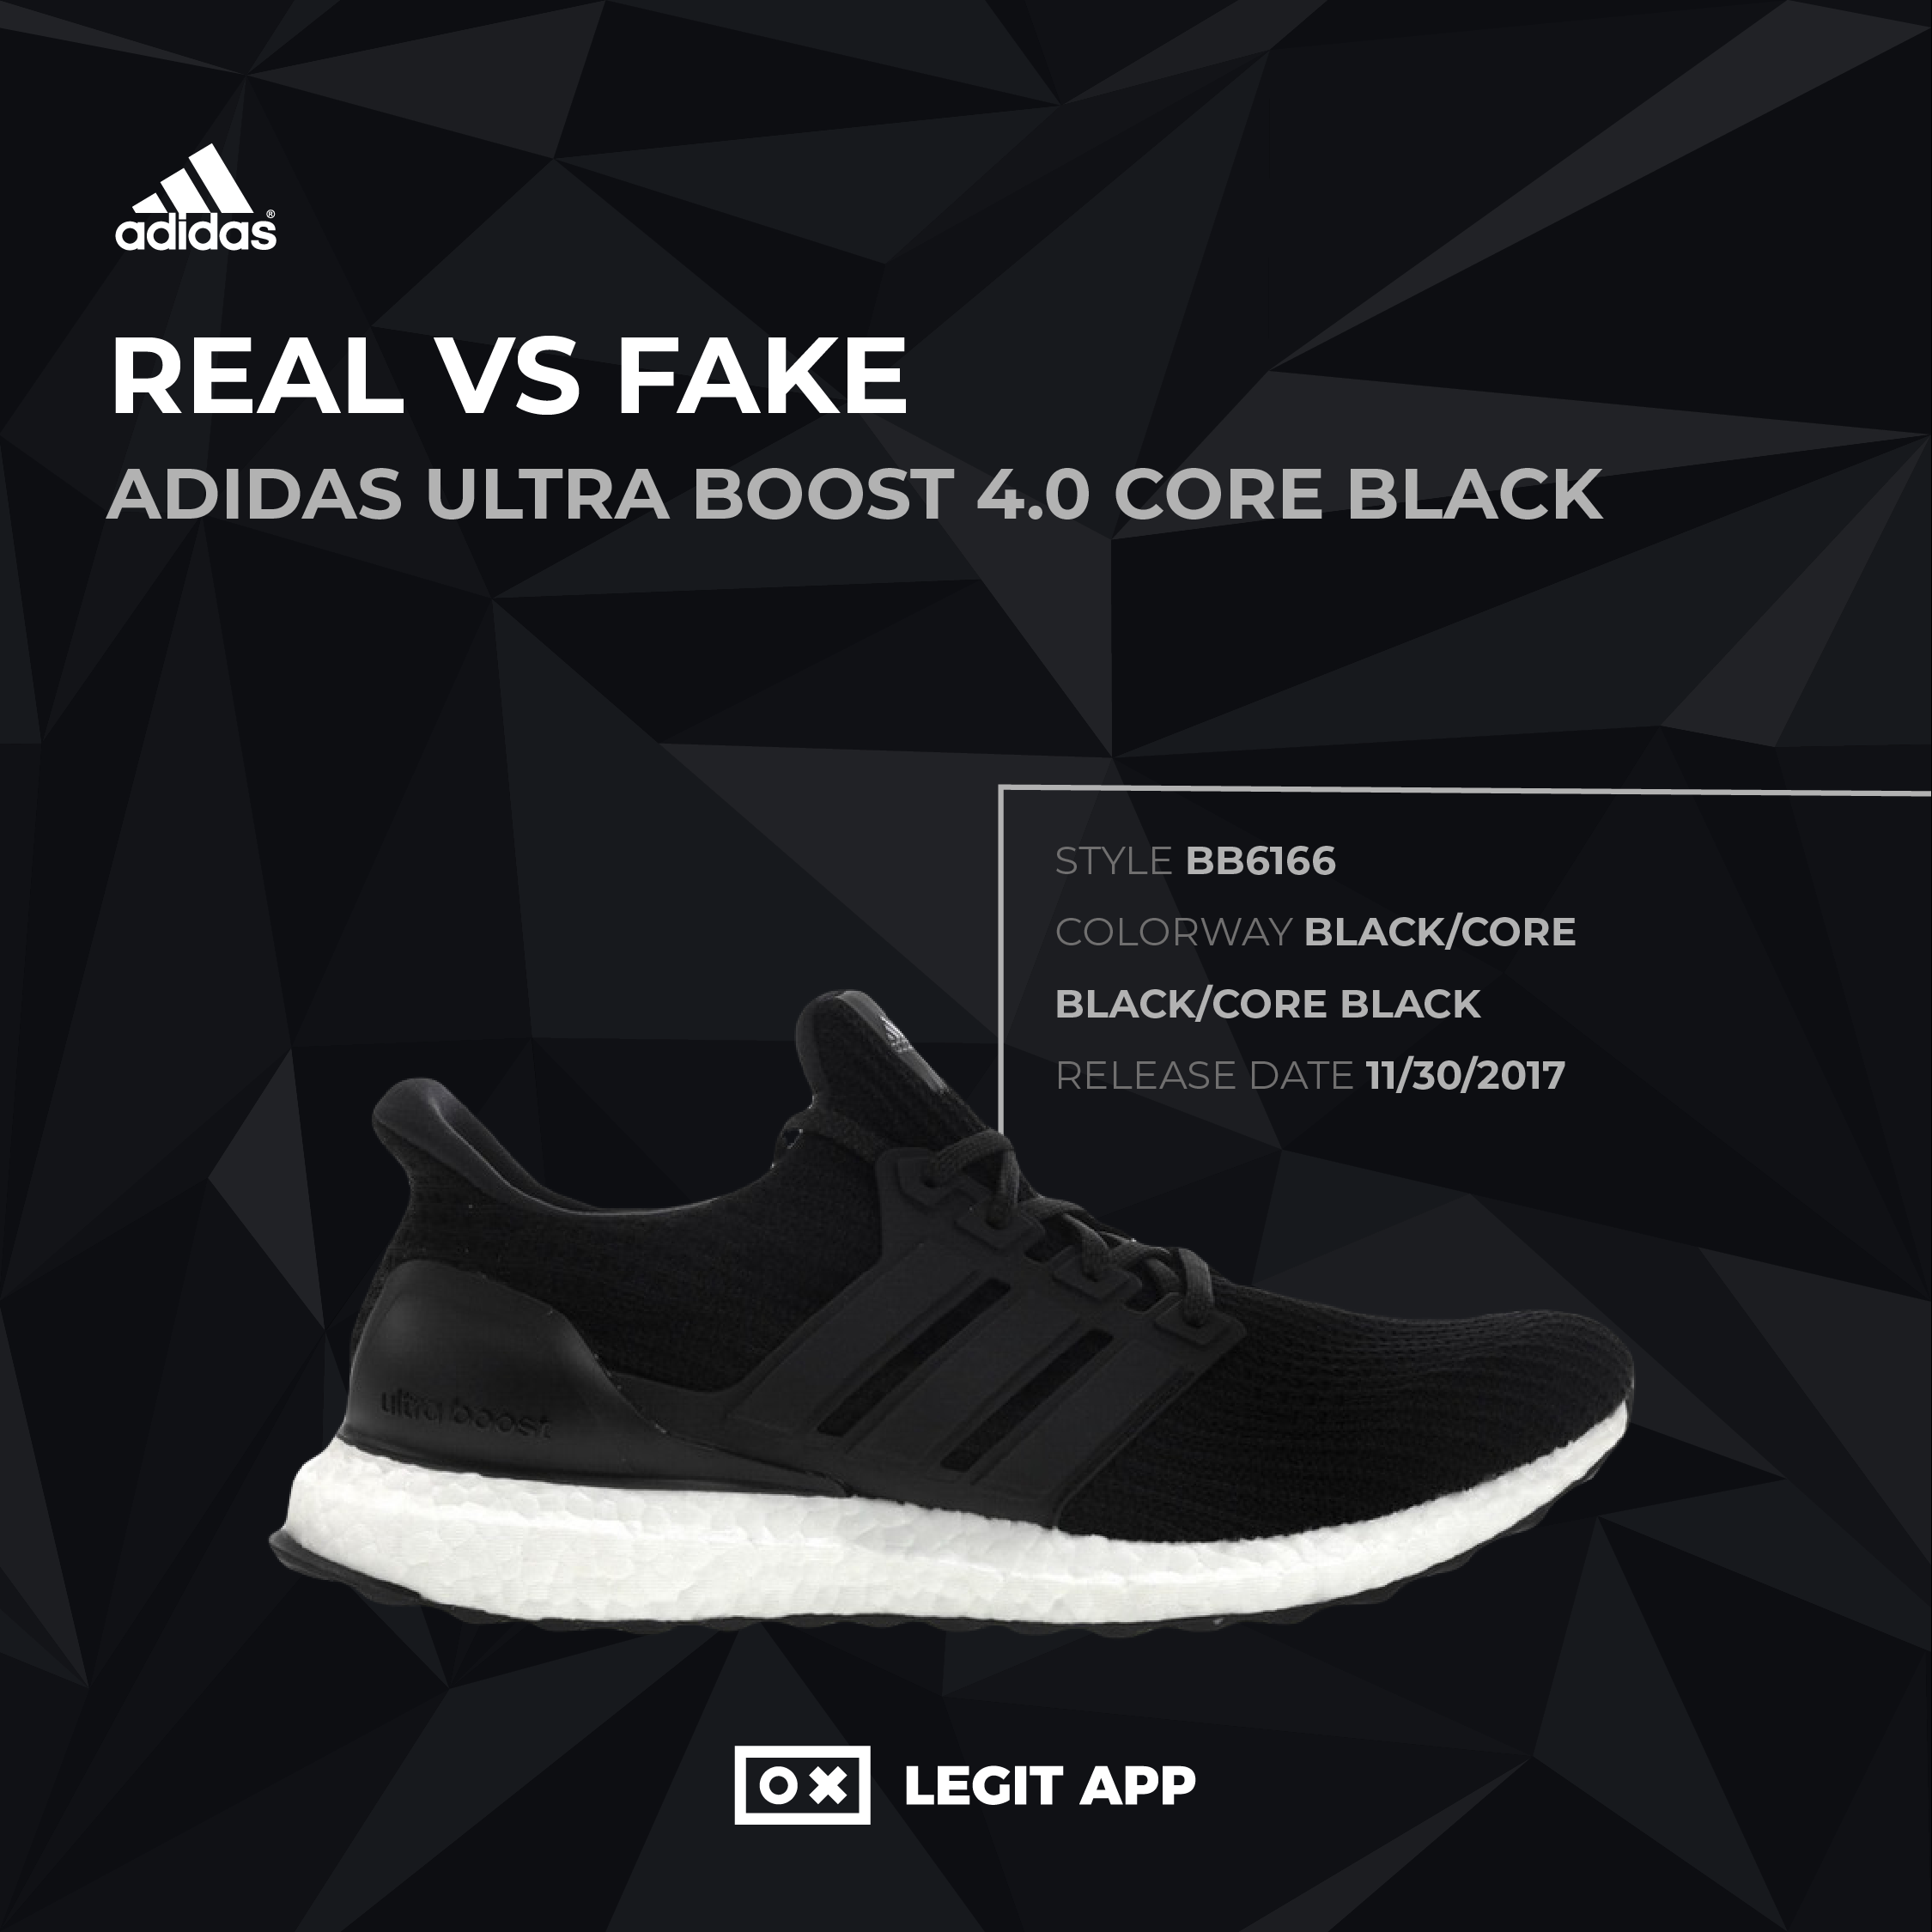 adidas ultra boost 4.0 fake vs real